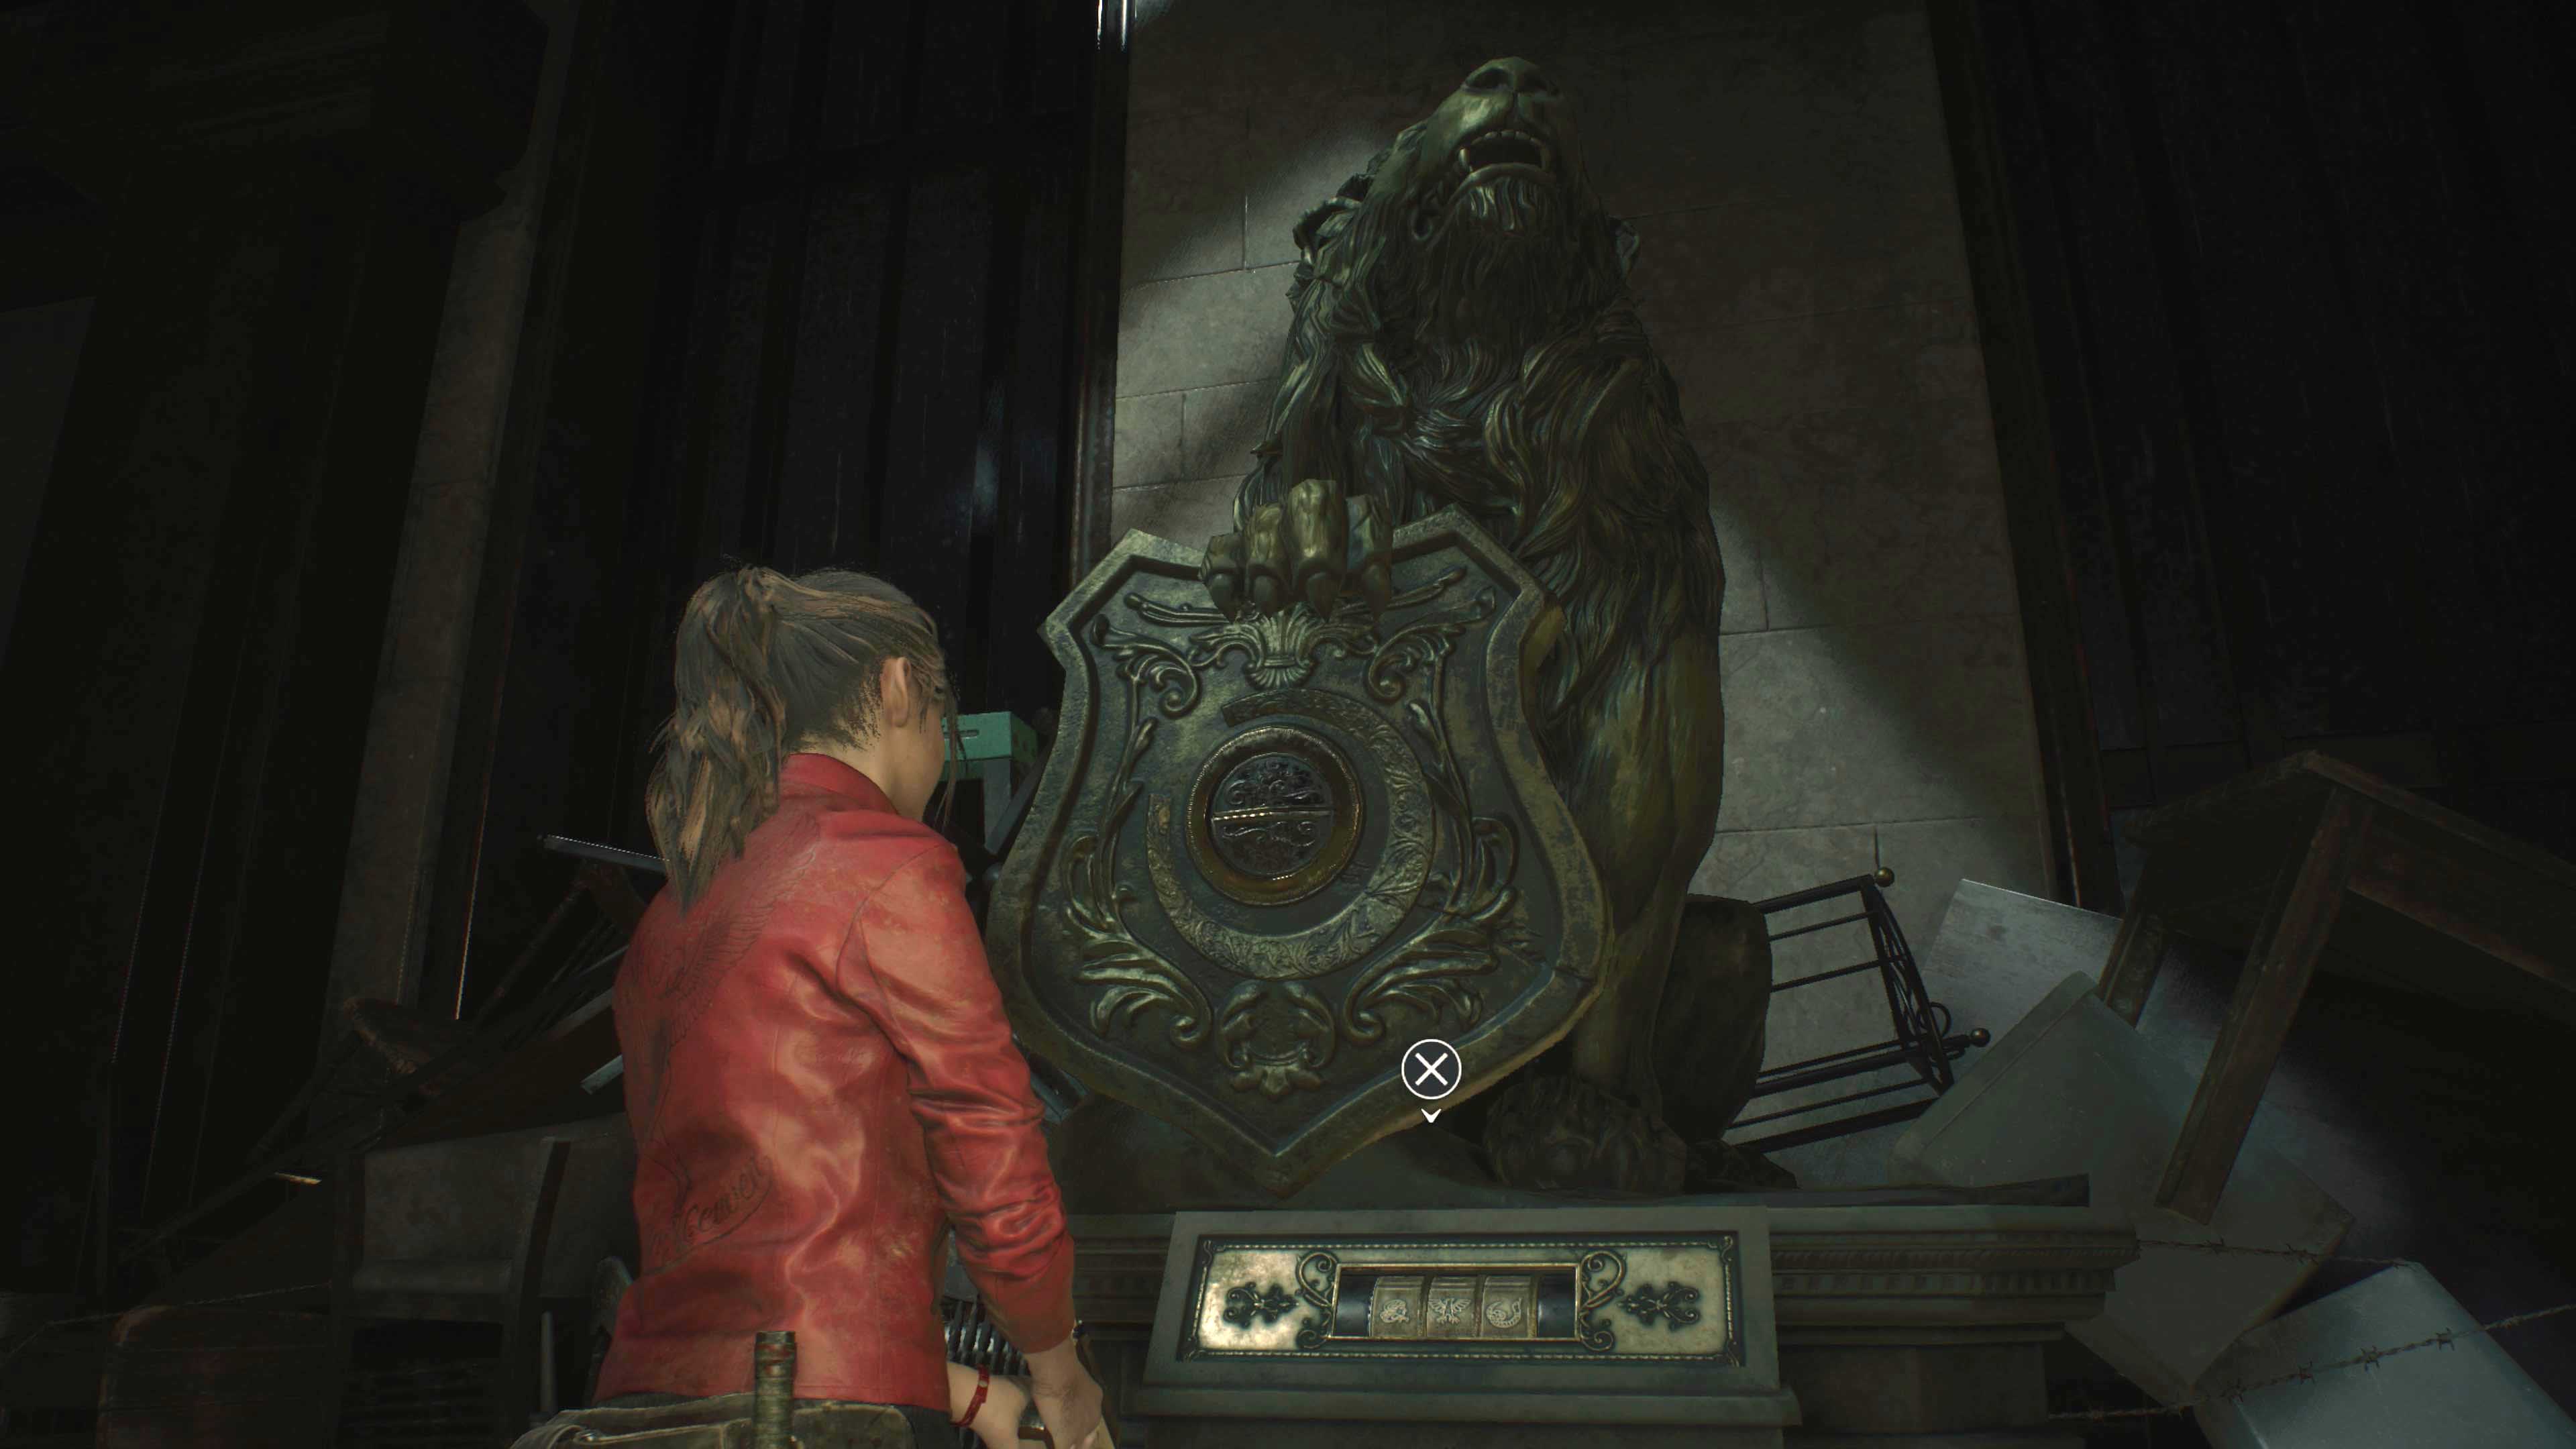 Códigos para os cofres, cadeados e estátuas de Resident Evil 2 Remake! -  Liga dos Games